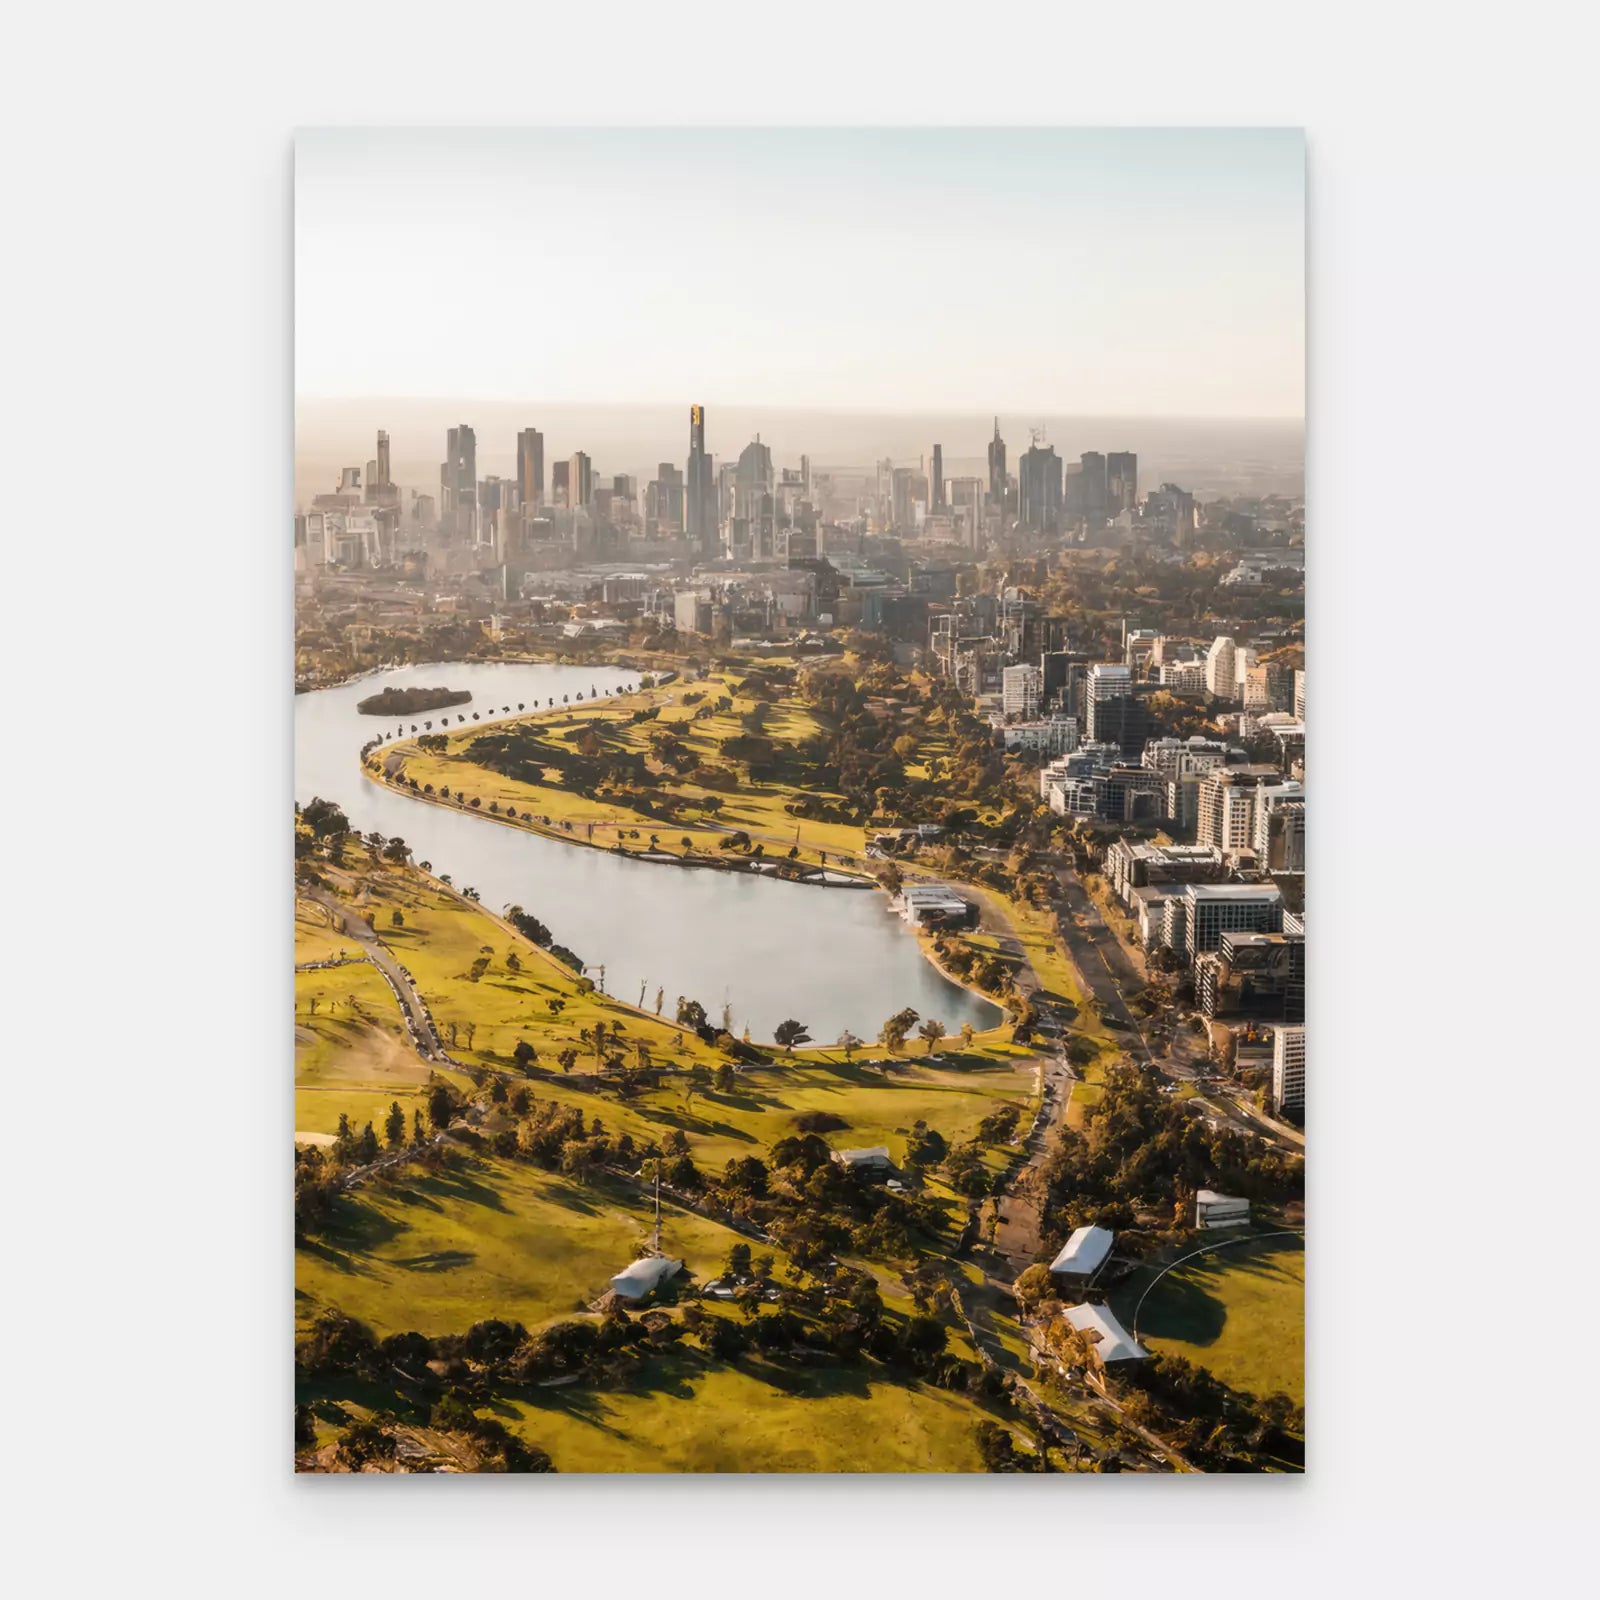 Melbourne - Australia (Portrait Edition)